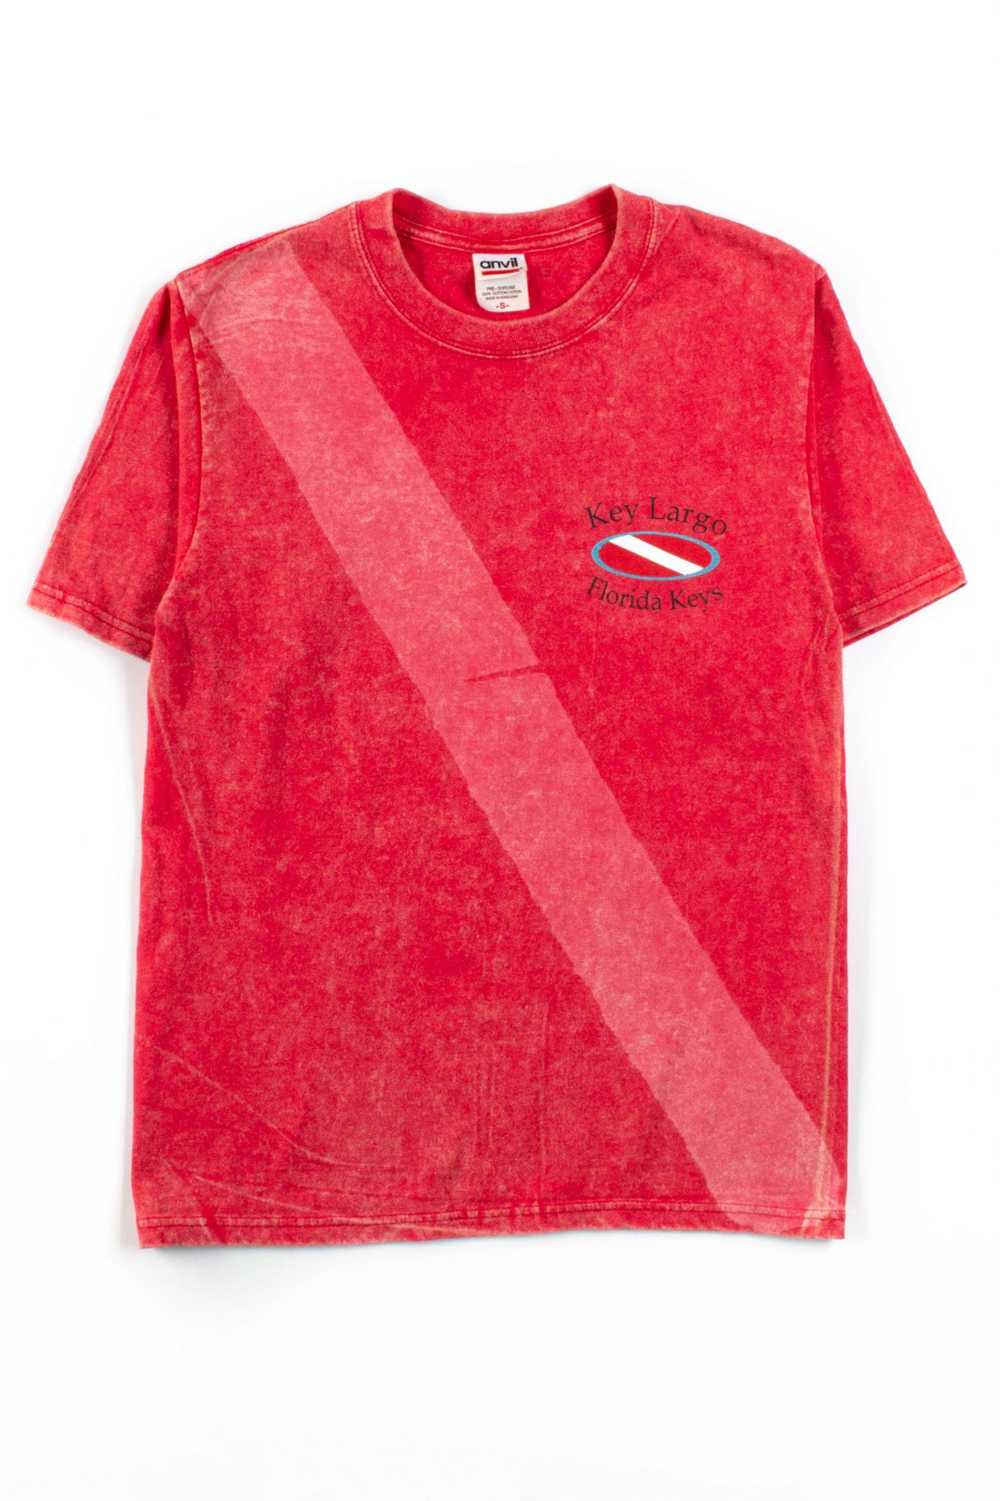 Key Largo Dive T-Shirt - image 2